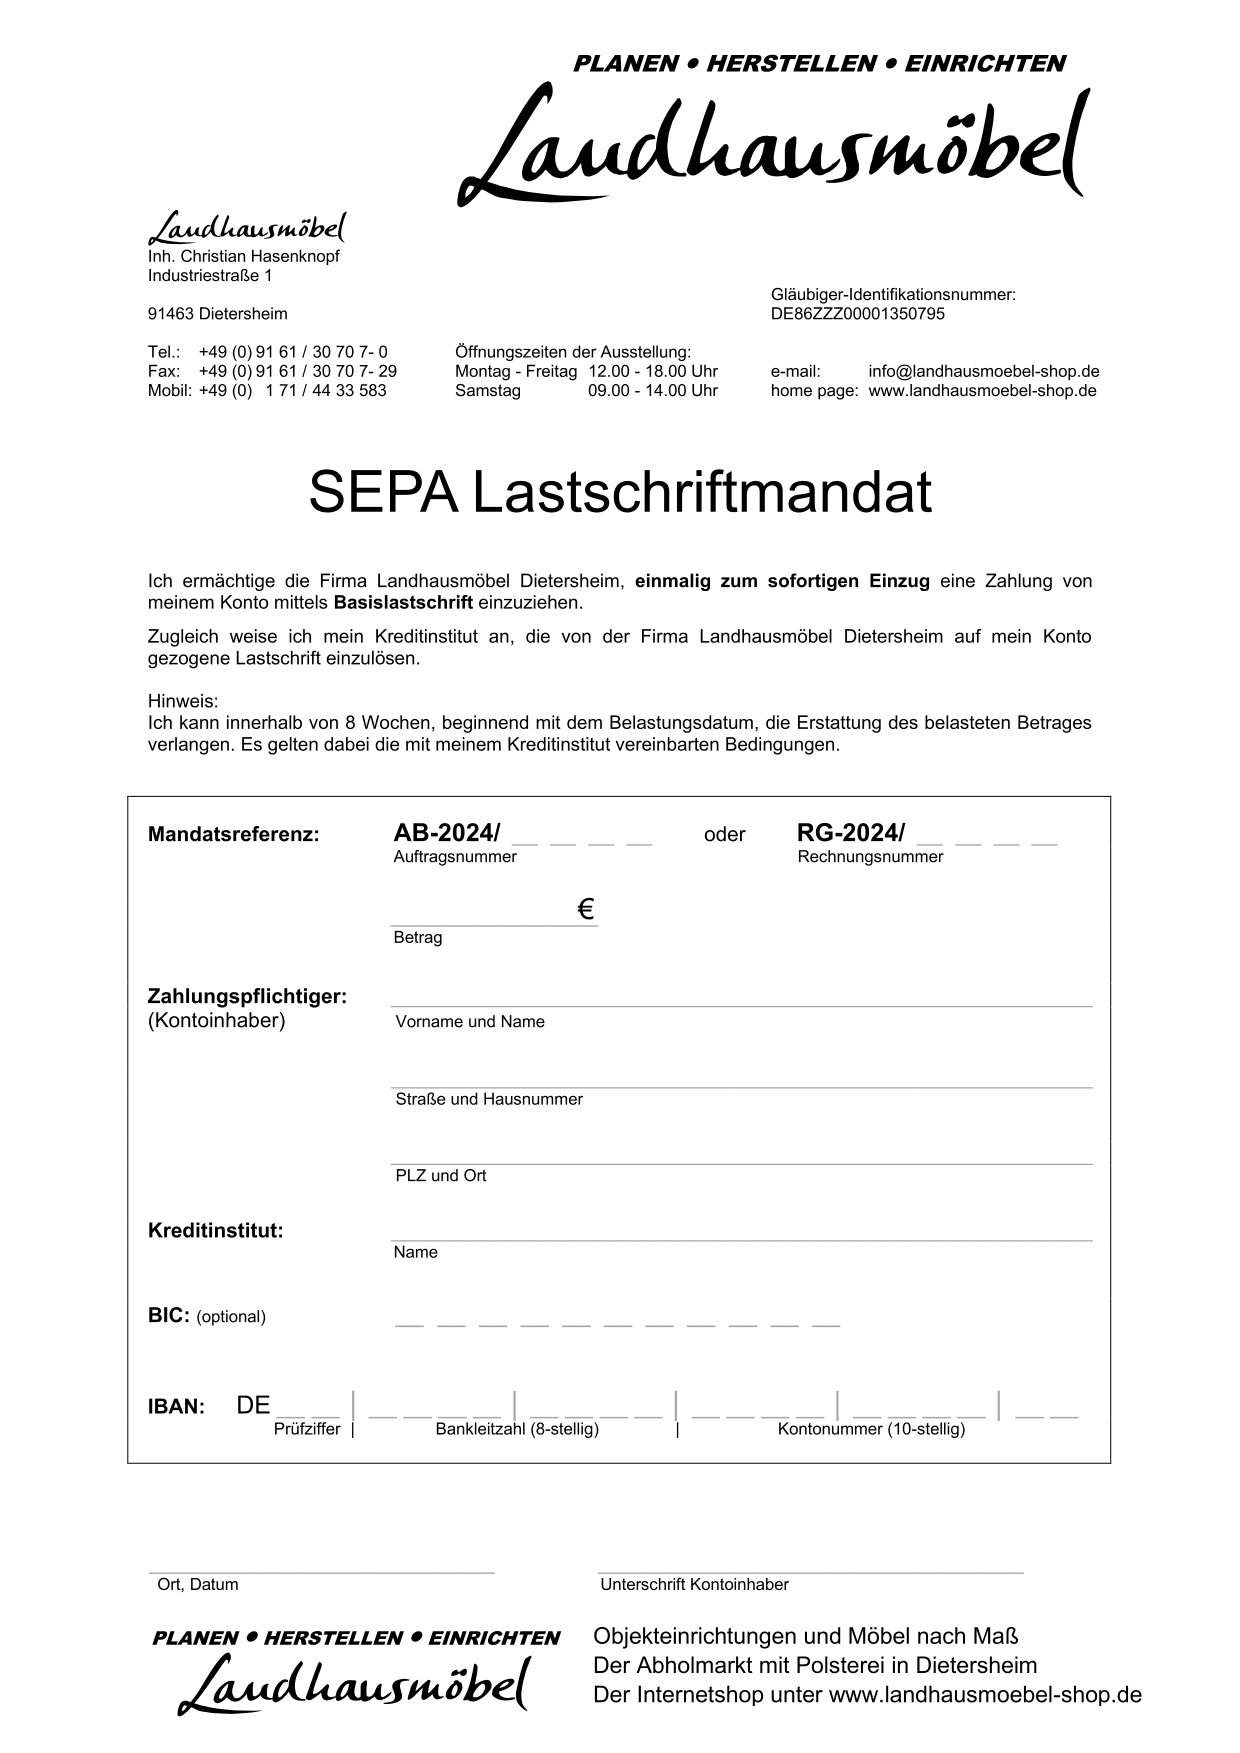 SEPA Lastschriftmandat Deutschland 2024